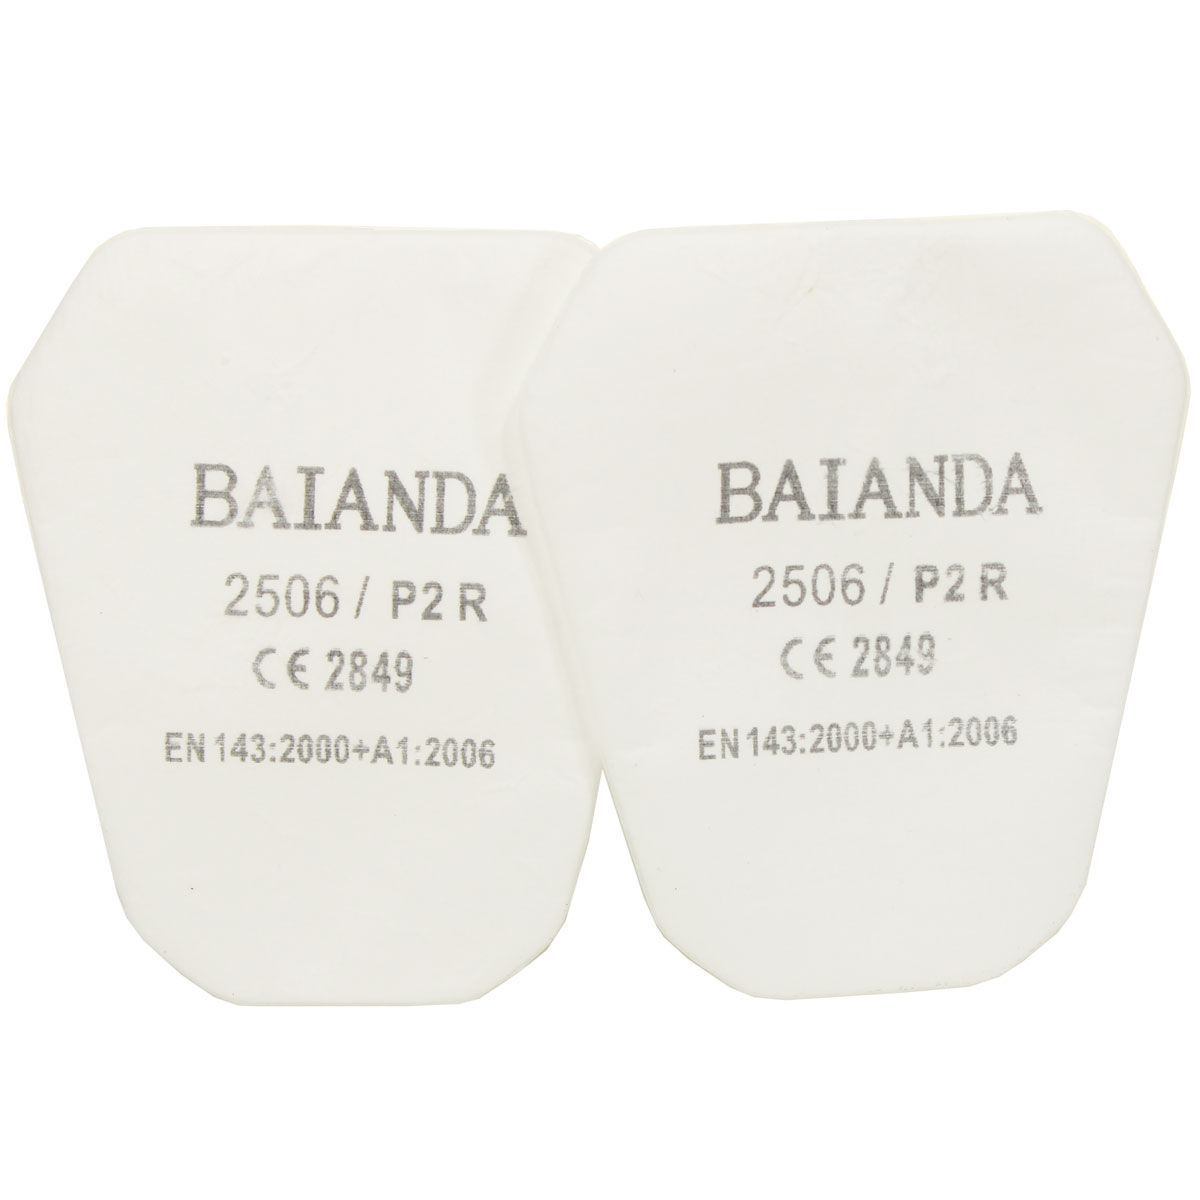 Комплект противоаэрозольных фильтров (предфильтров) BAIANDA 2506, класс P2R, 10 шт/уп адаптер fey01 для крепления противоаэрозольных предфильтров baianda 2506 и 2509 2 шт уп